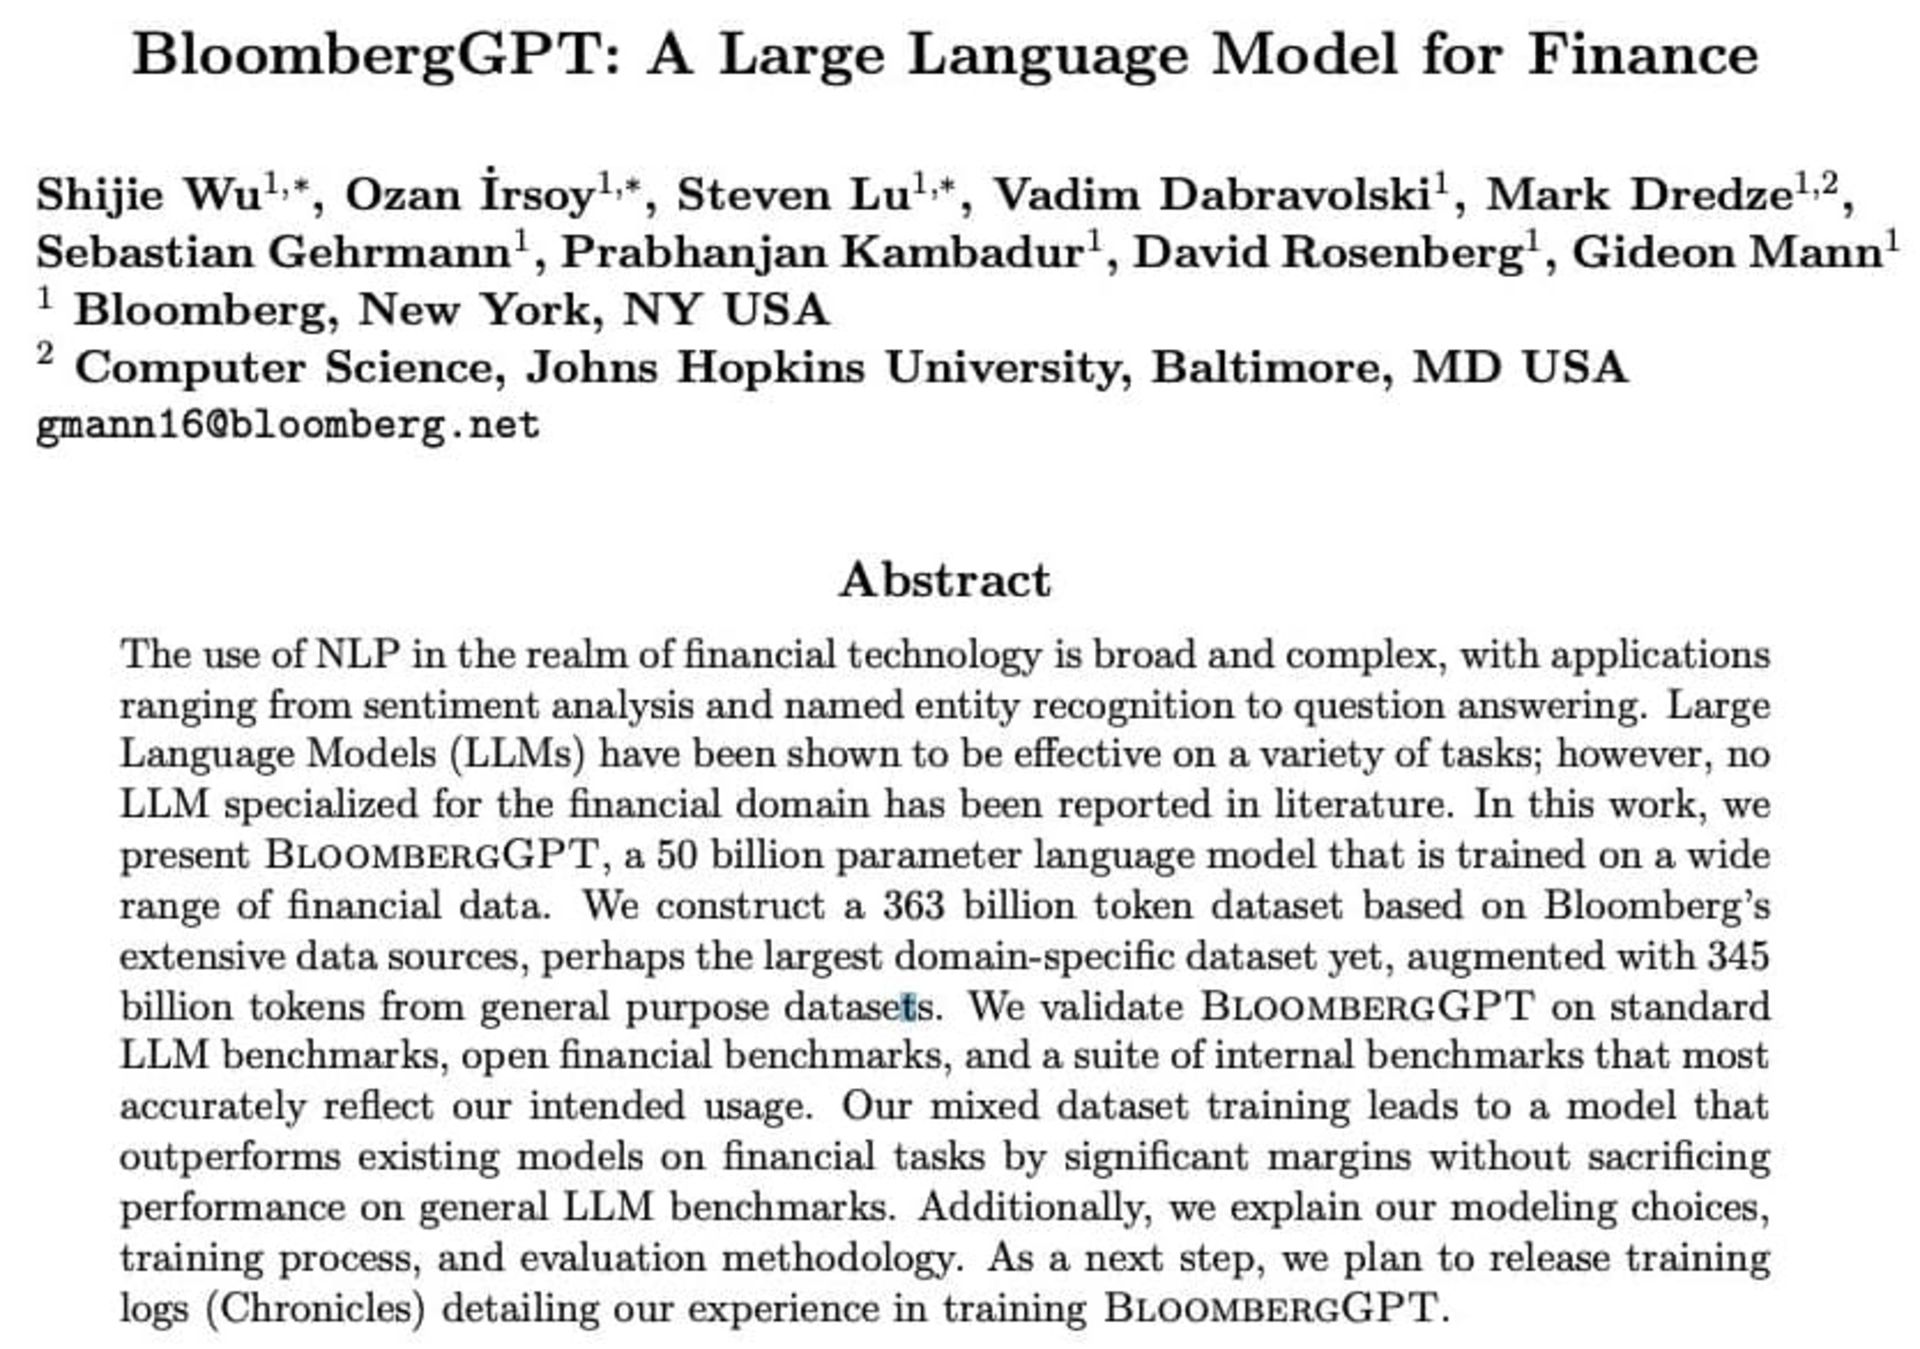 جزئیات مدل زبانی BloombergGPT